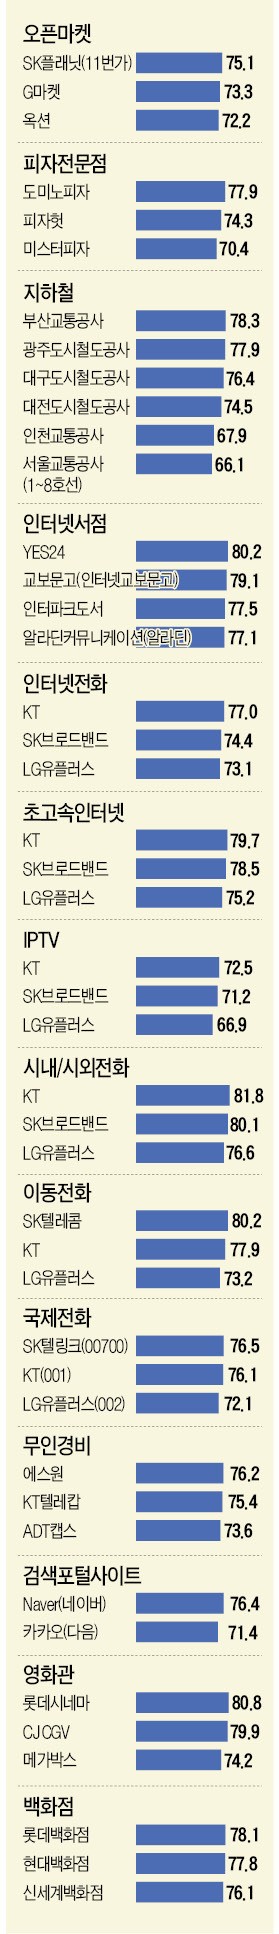 [2017 산업별 KCSI 지수] 초고속인터넷·IPTV…KT가 최강자